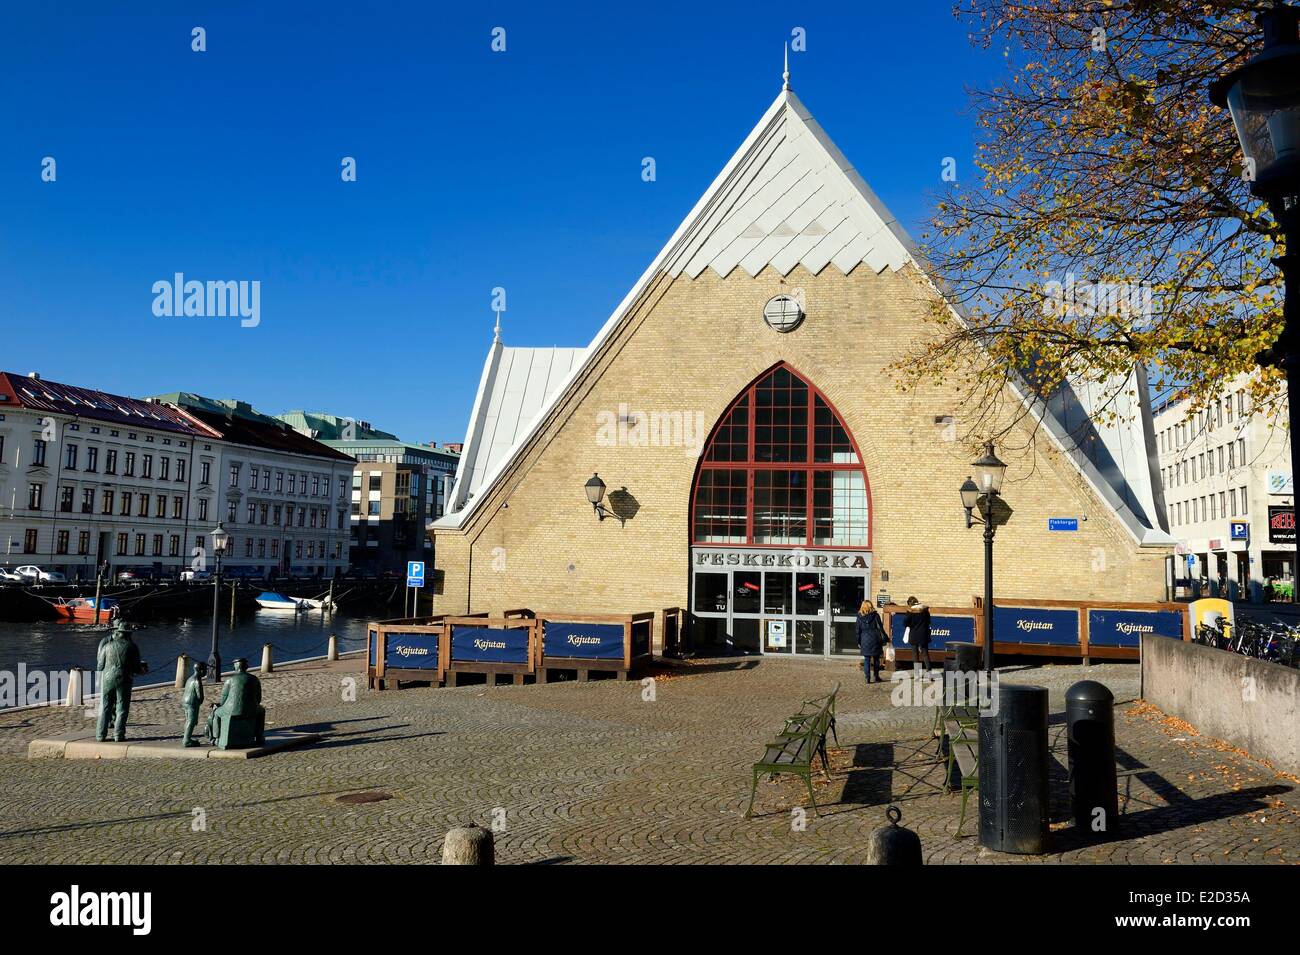 La Svezia Vastra Gotaland Goteborg (Göteborg) il pesce Chiesa Feskekorka Foto Stock